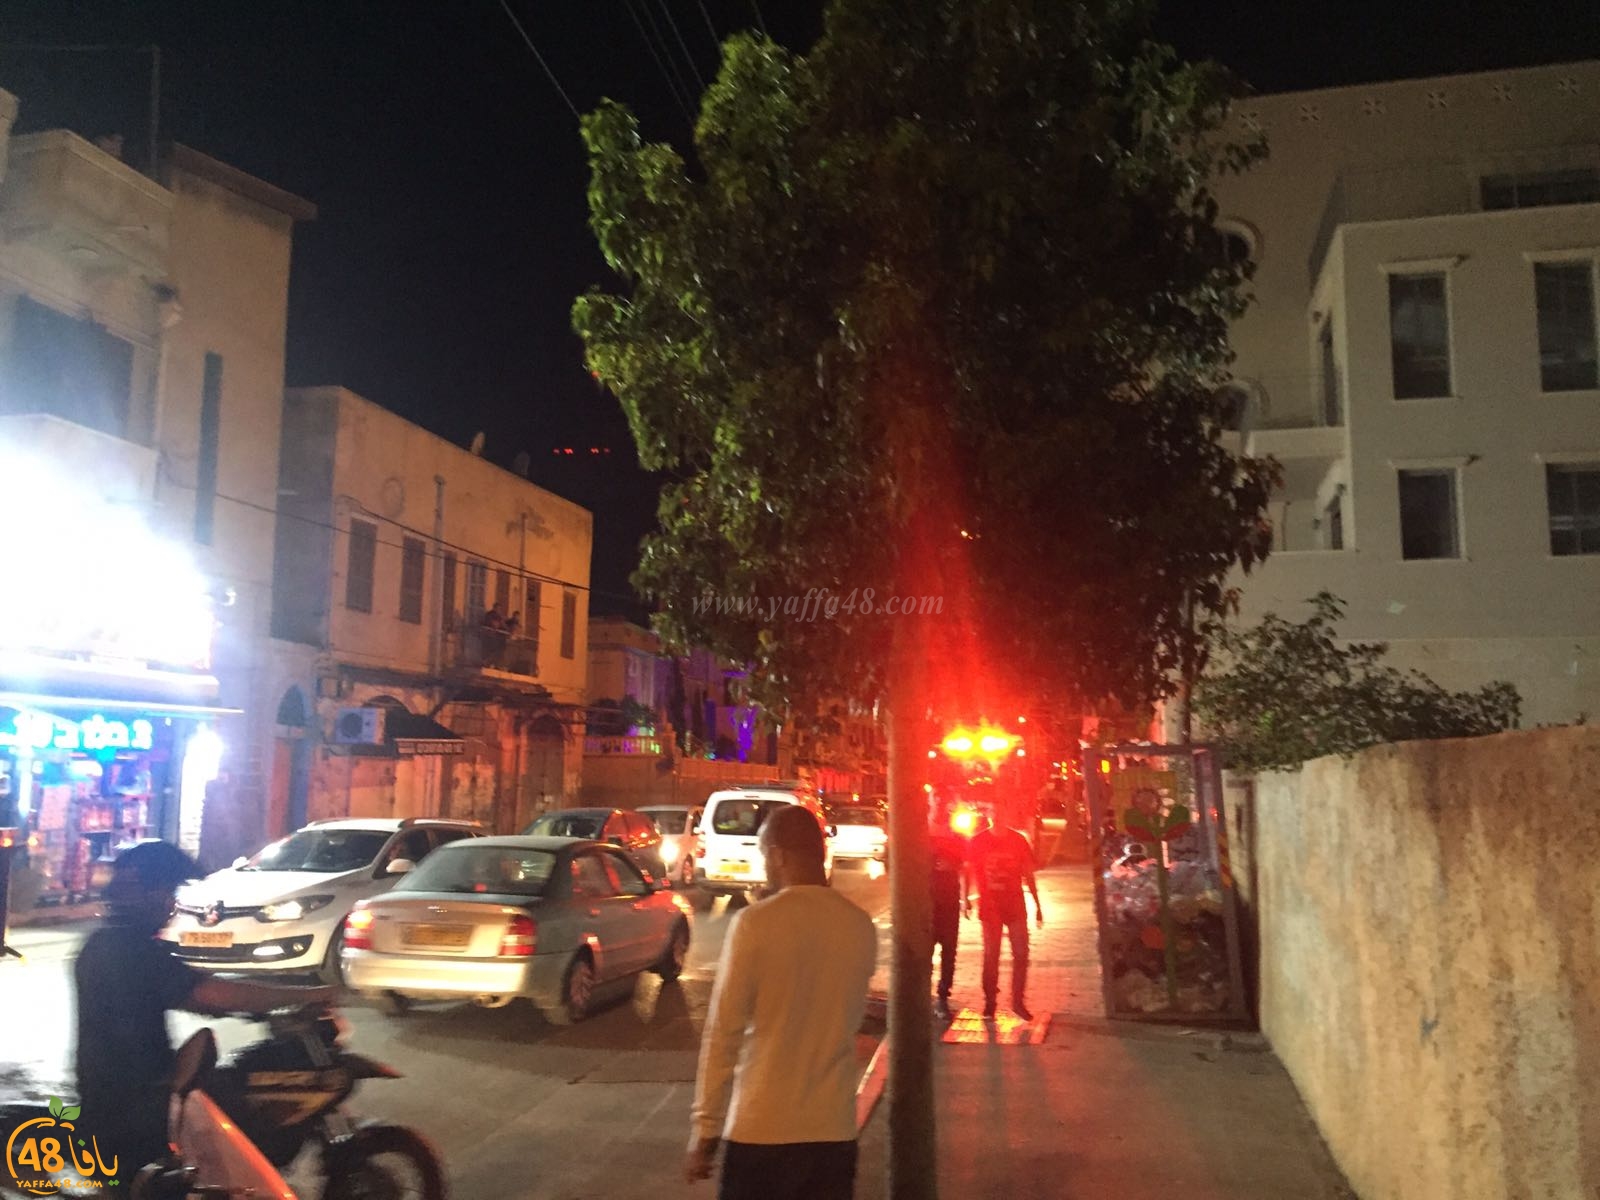  يافا: بلاغ كاذب باندلاع حريق في مركز الشبيبة يييفت 83